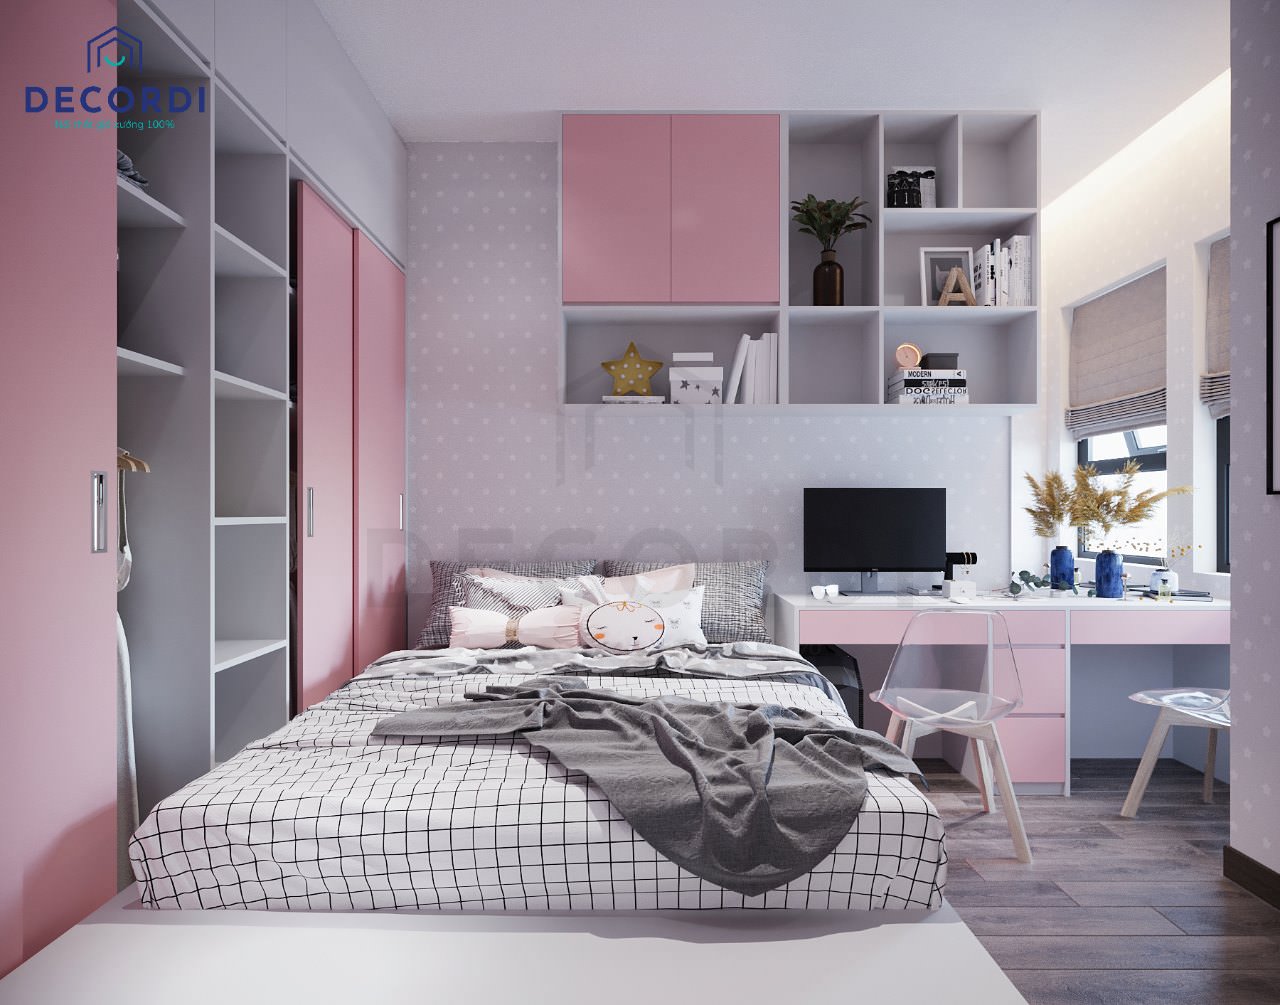 Thiết kế bộ nội thất phòng ngủ từ chất liệu gỗ ép công nghiệp sơn màu hồng dễ thương cho bé gái